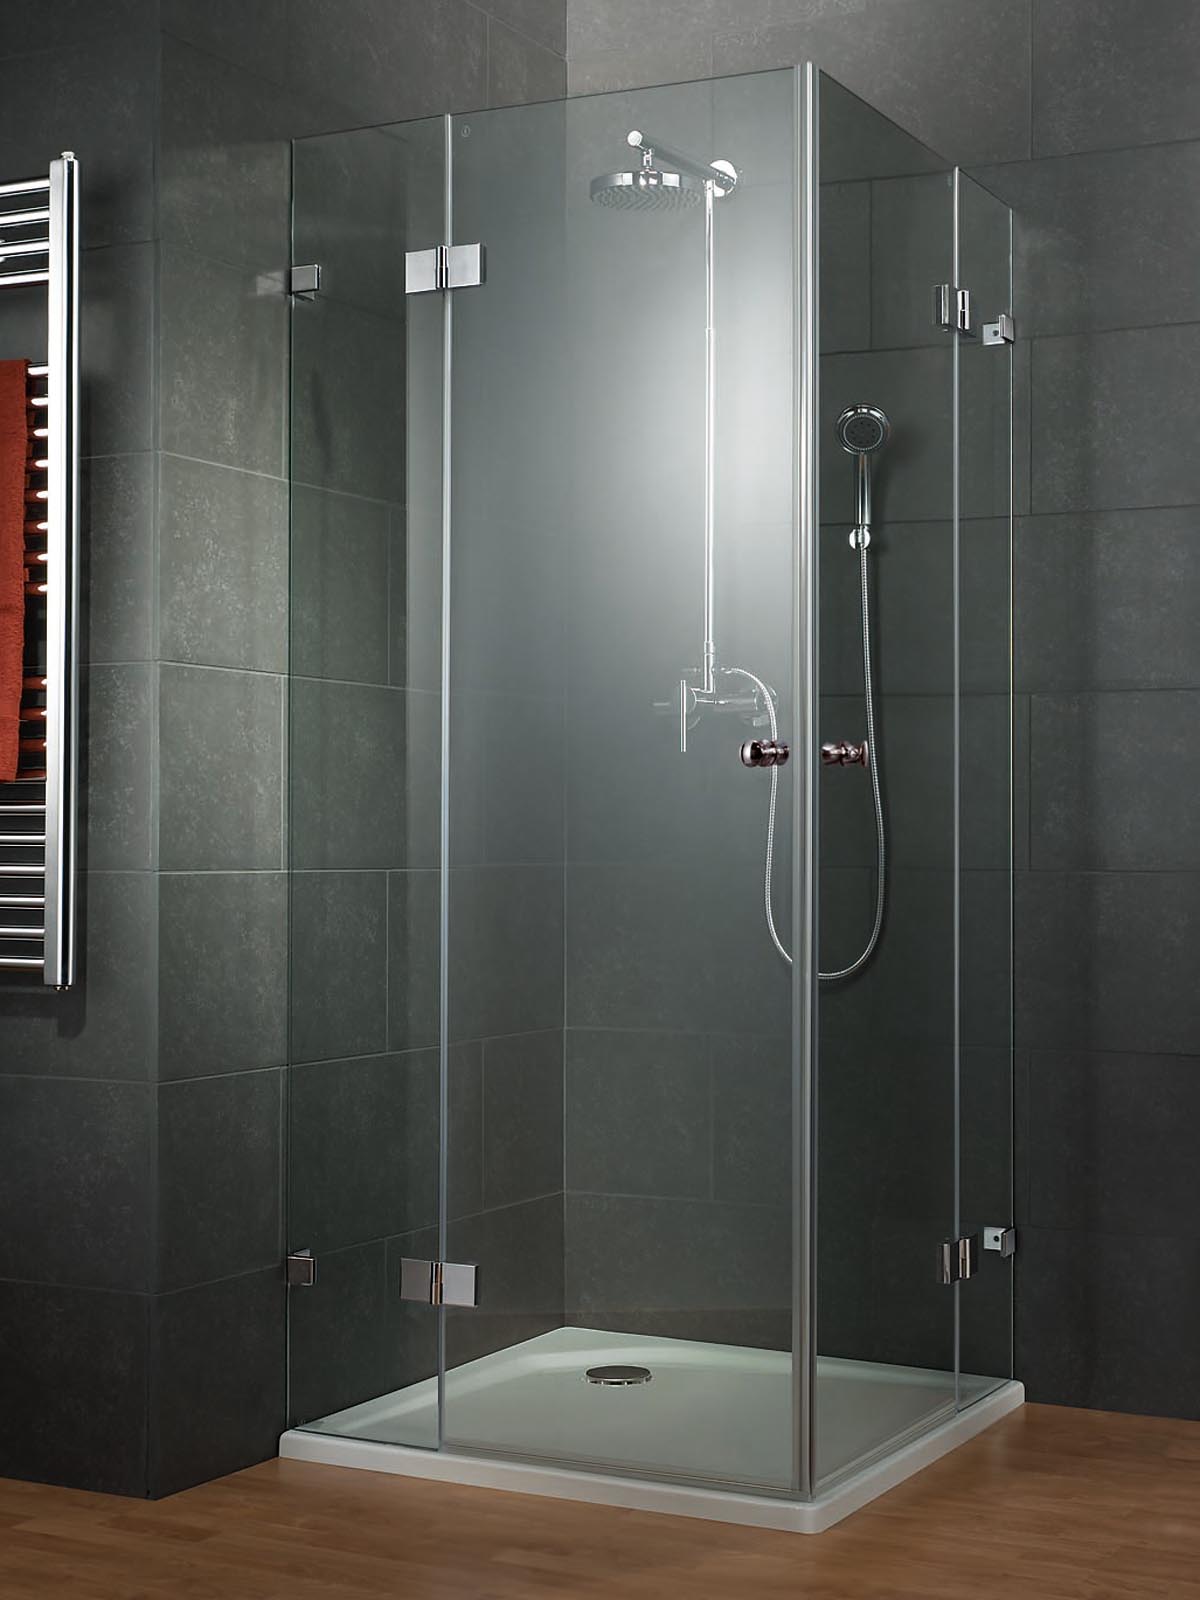 Öntse saját stílusát egy zuhanykabin formájába!